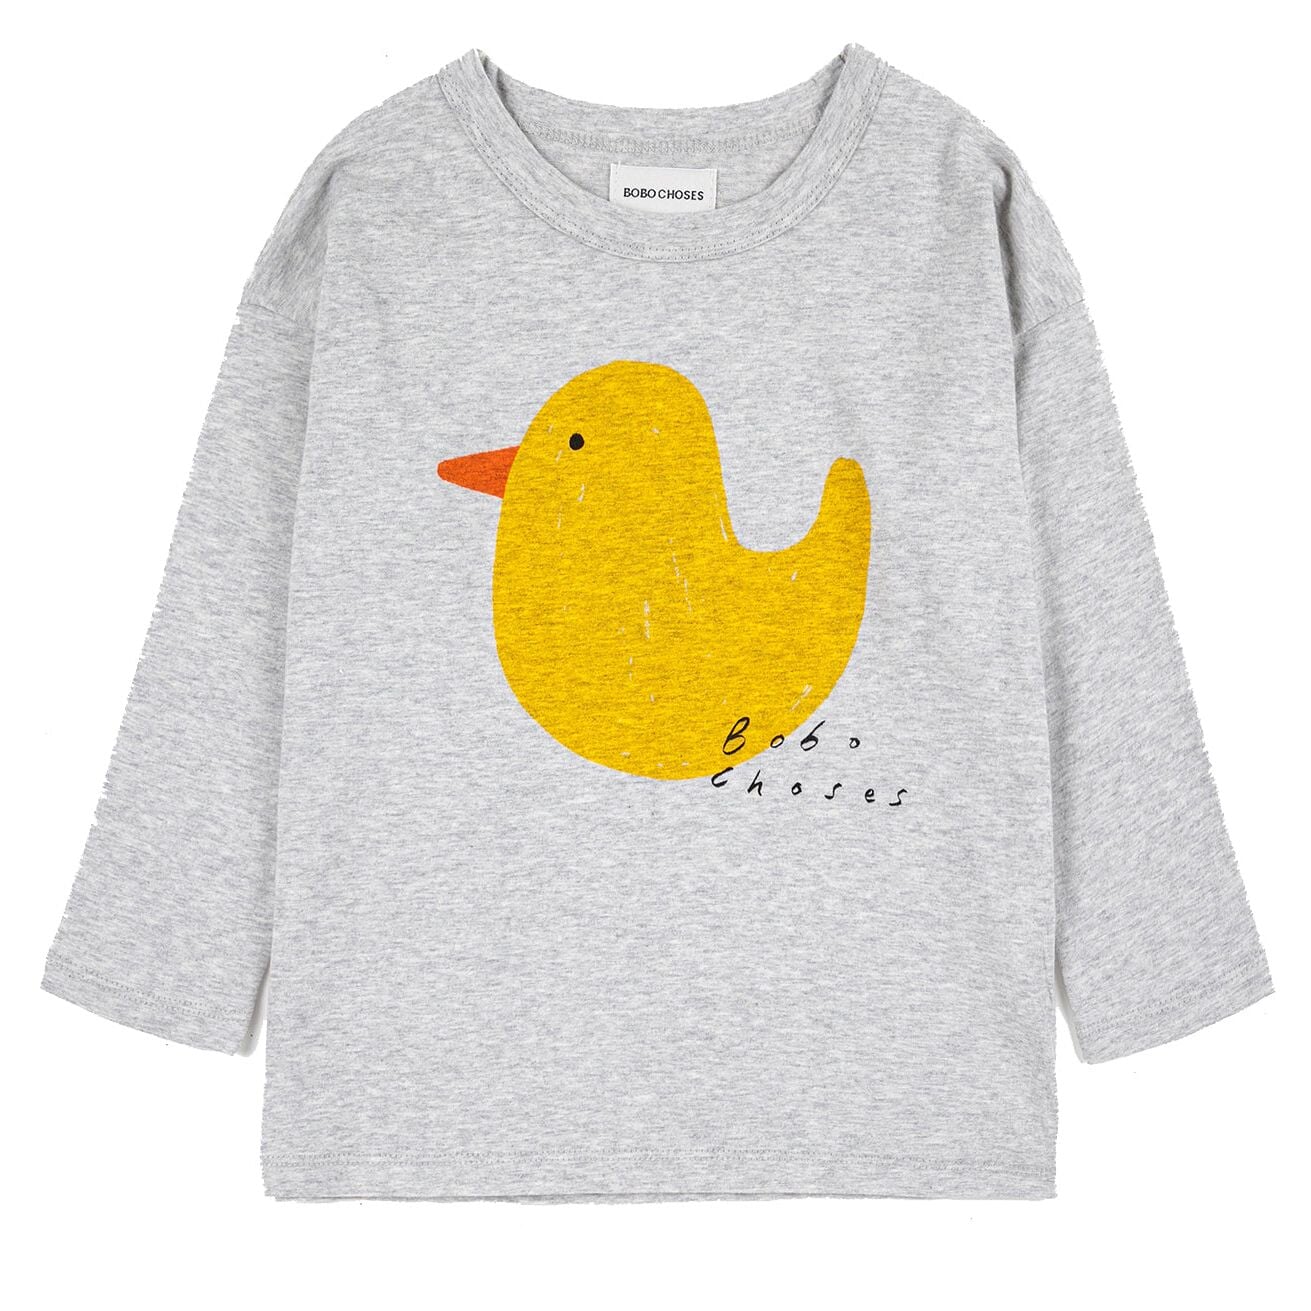 Rubber Duck Long Sleeve T-Shirt